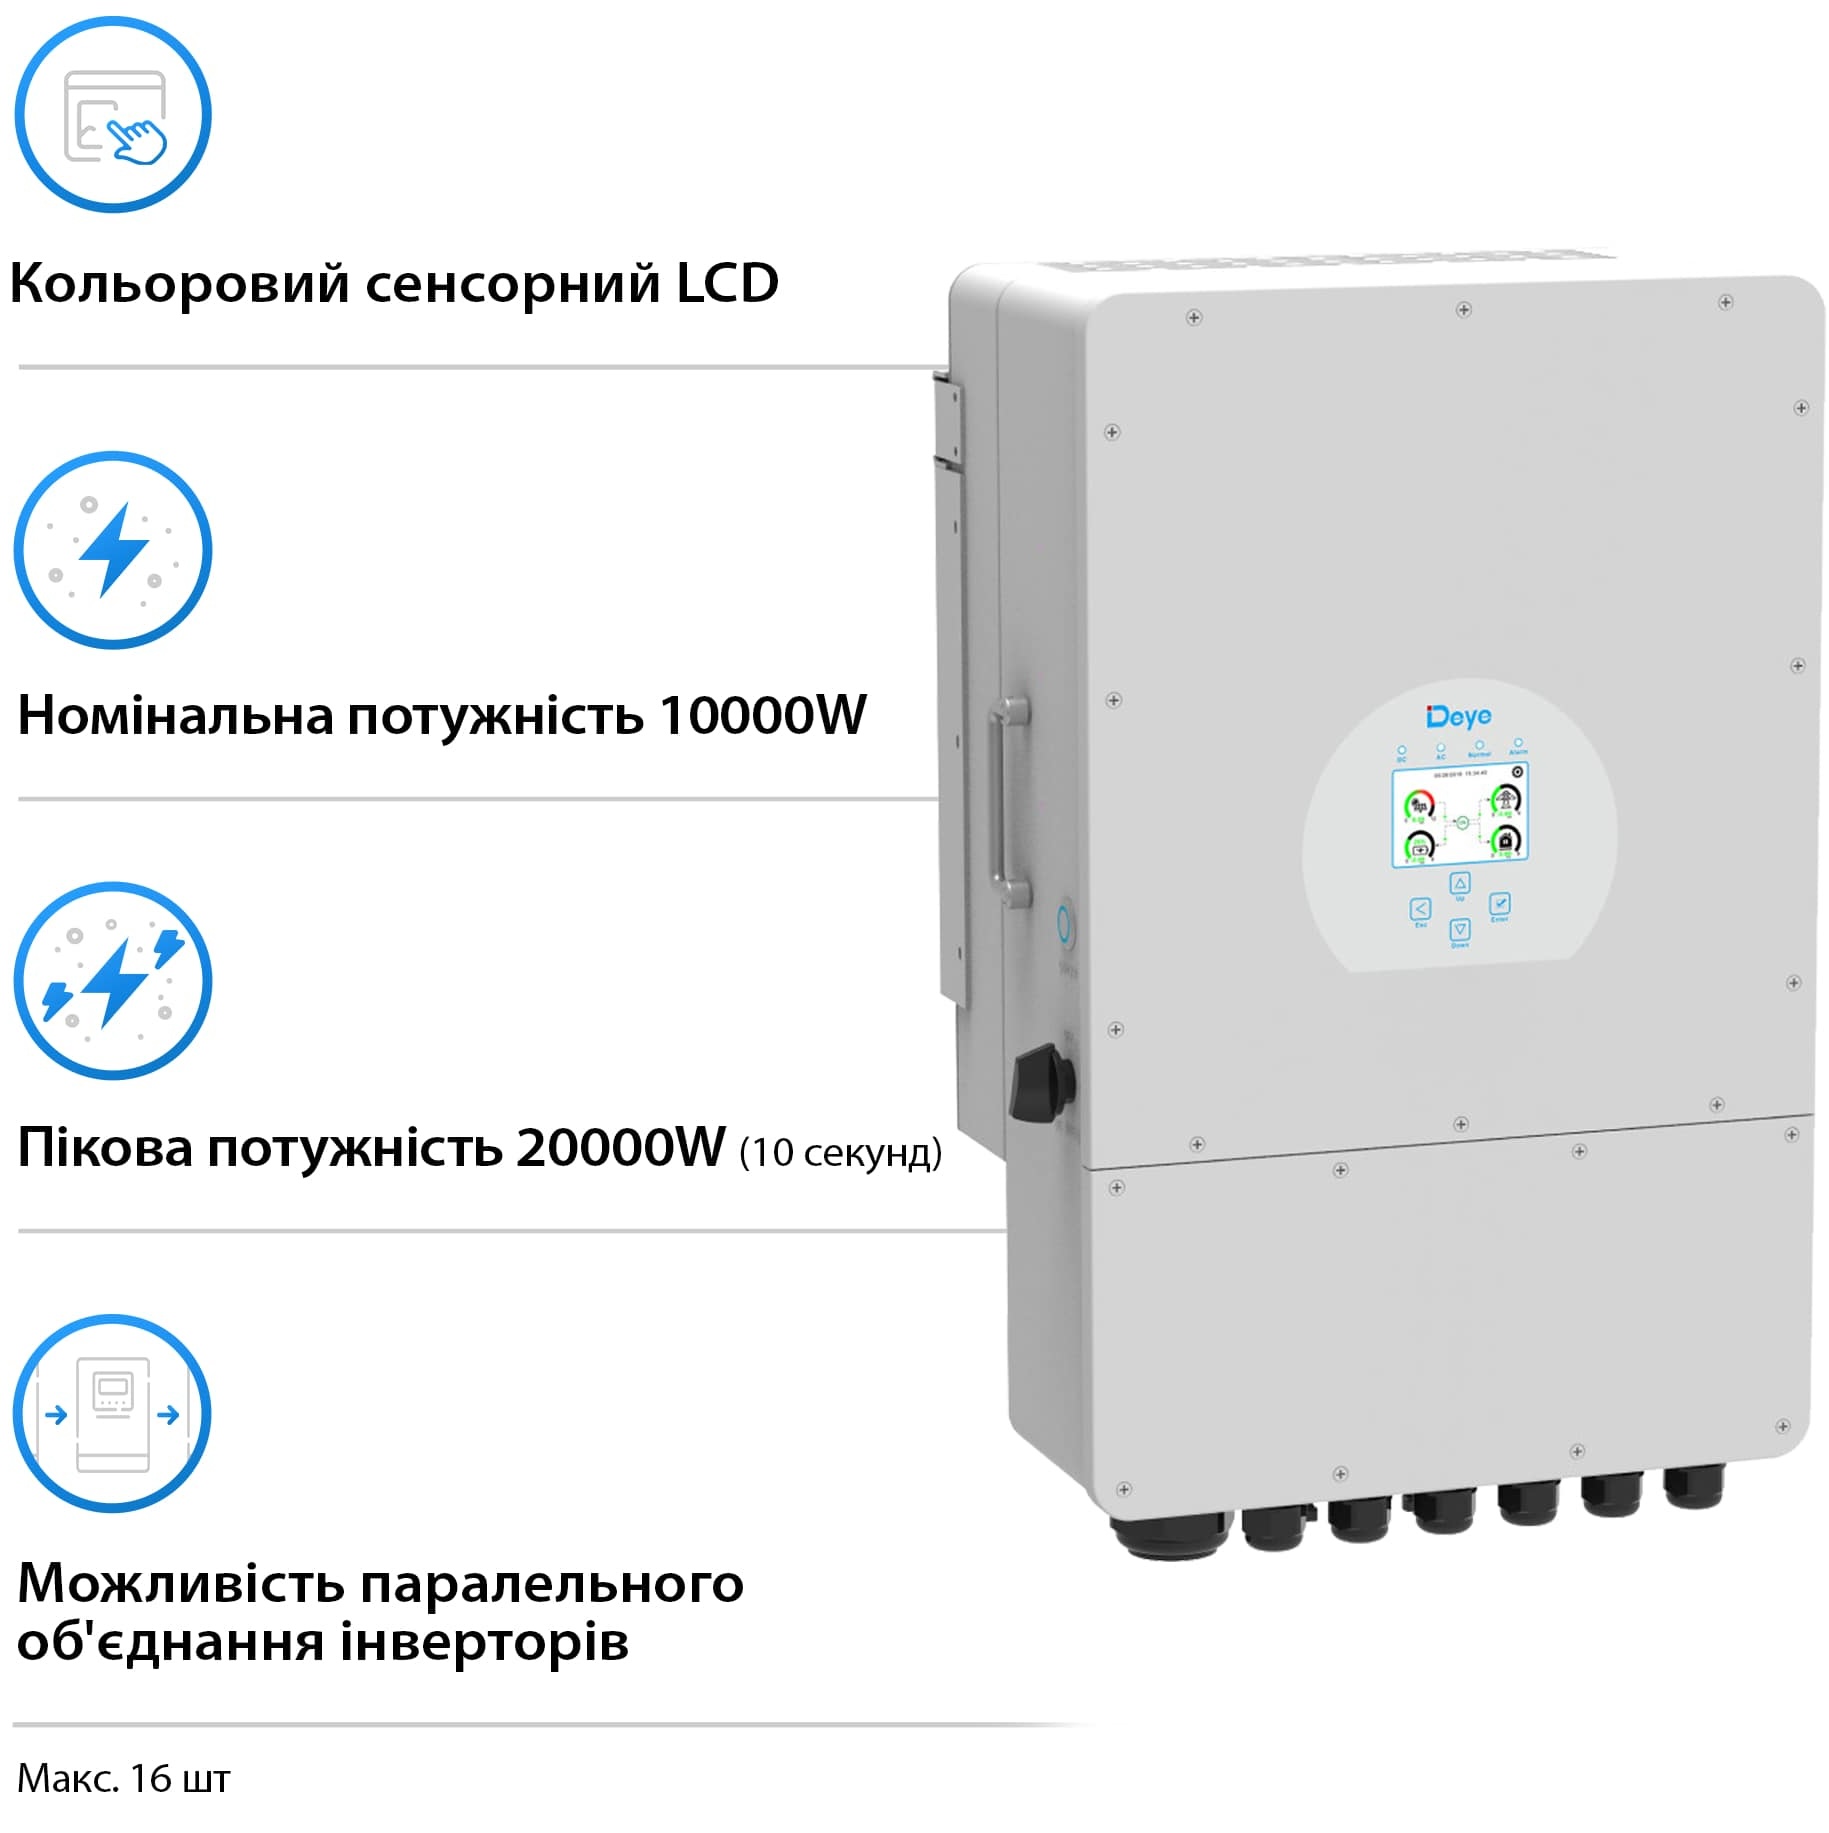 Инвертор гибридный Deye SUN-10K-SG02LP1-EU-AM3 цена 85560.00 грн - фотография 2